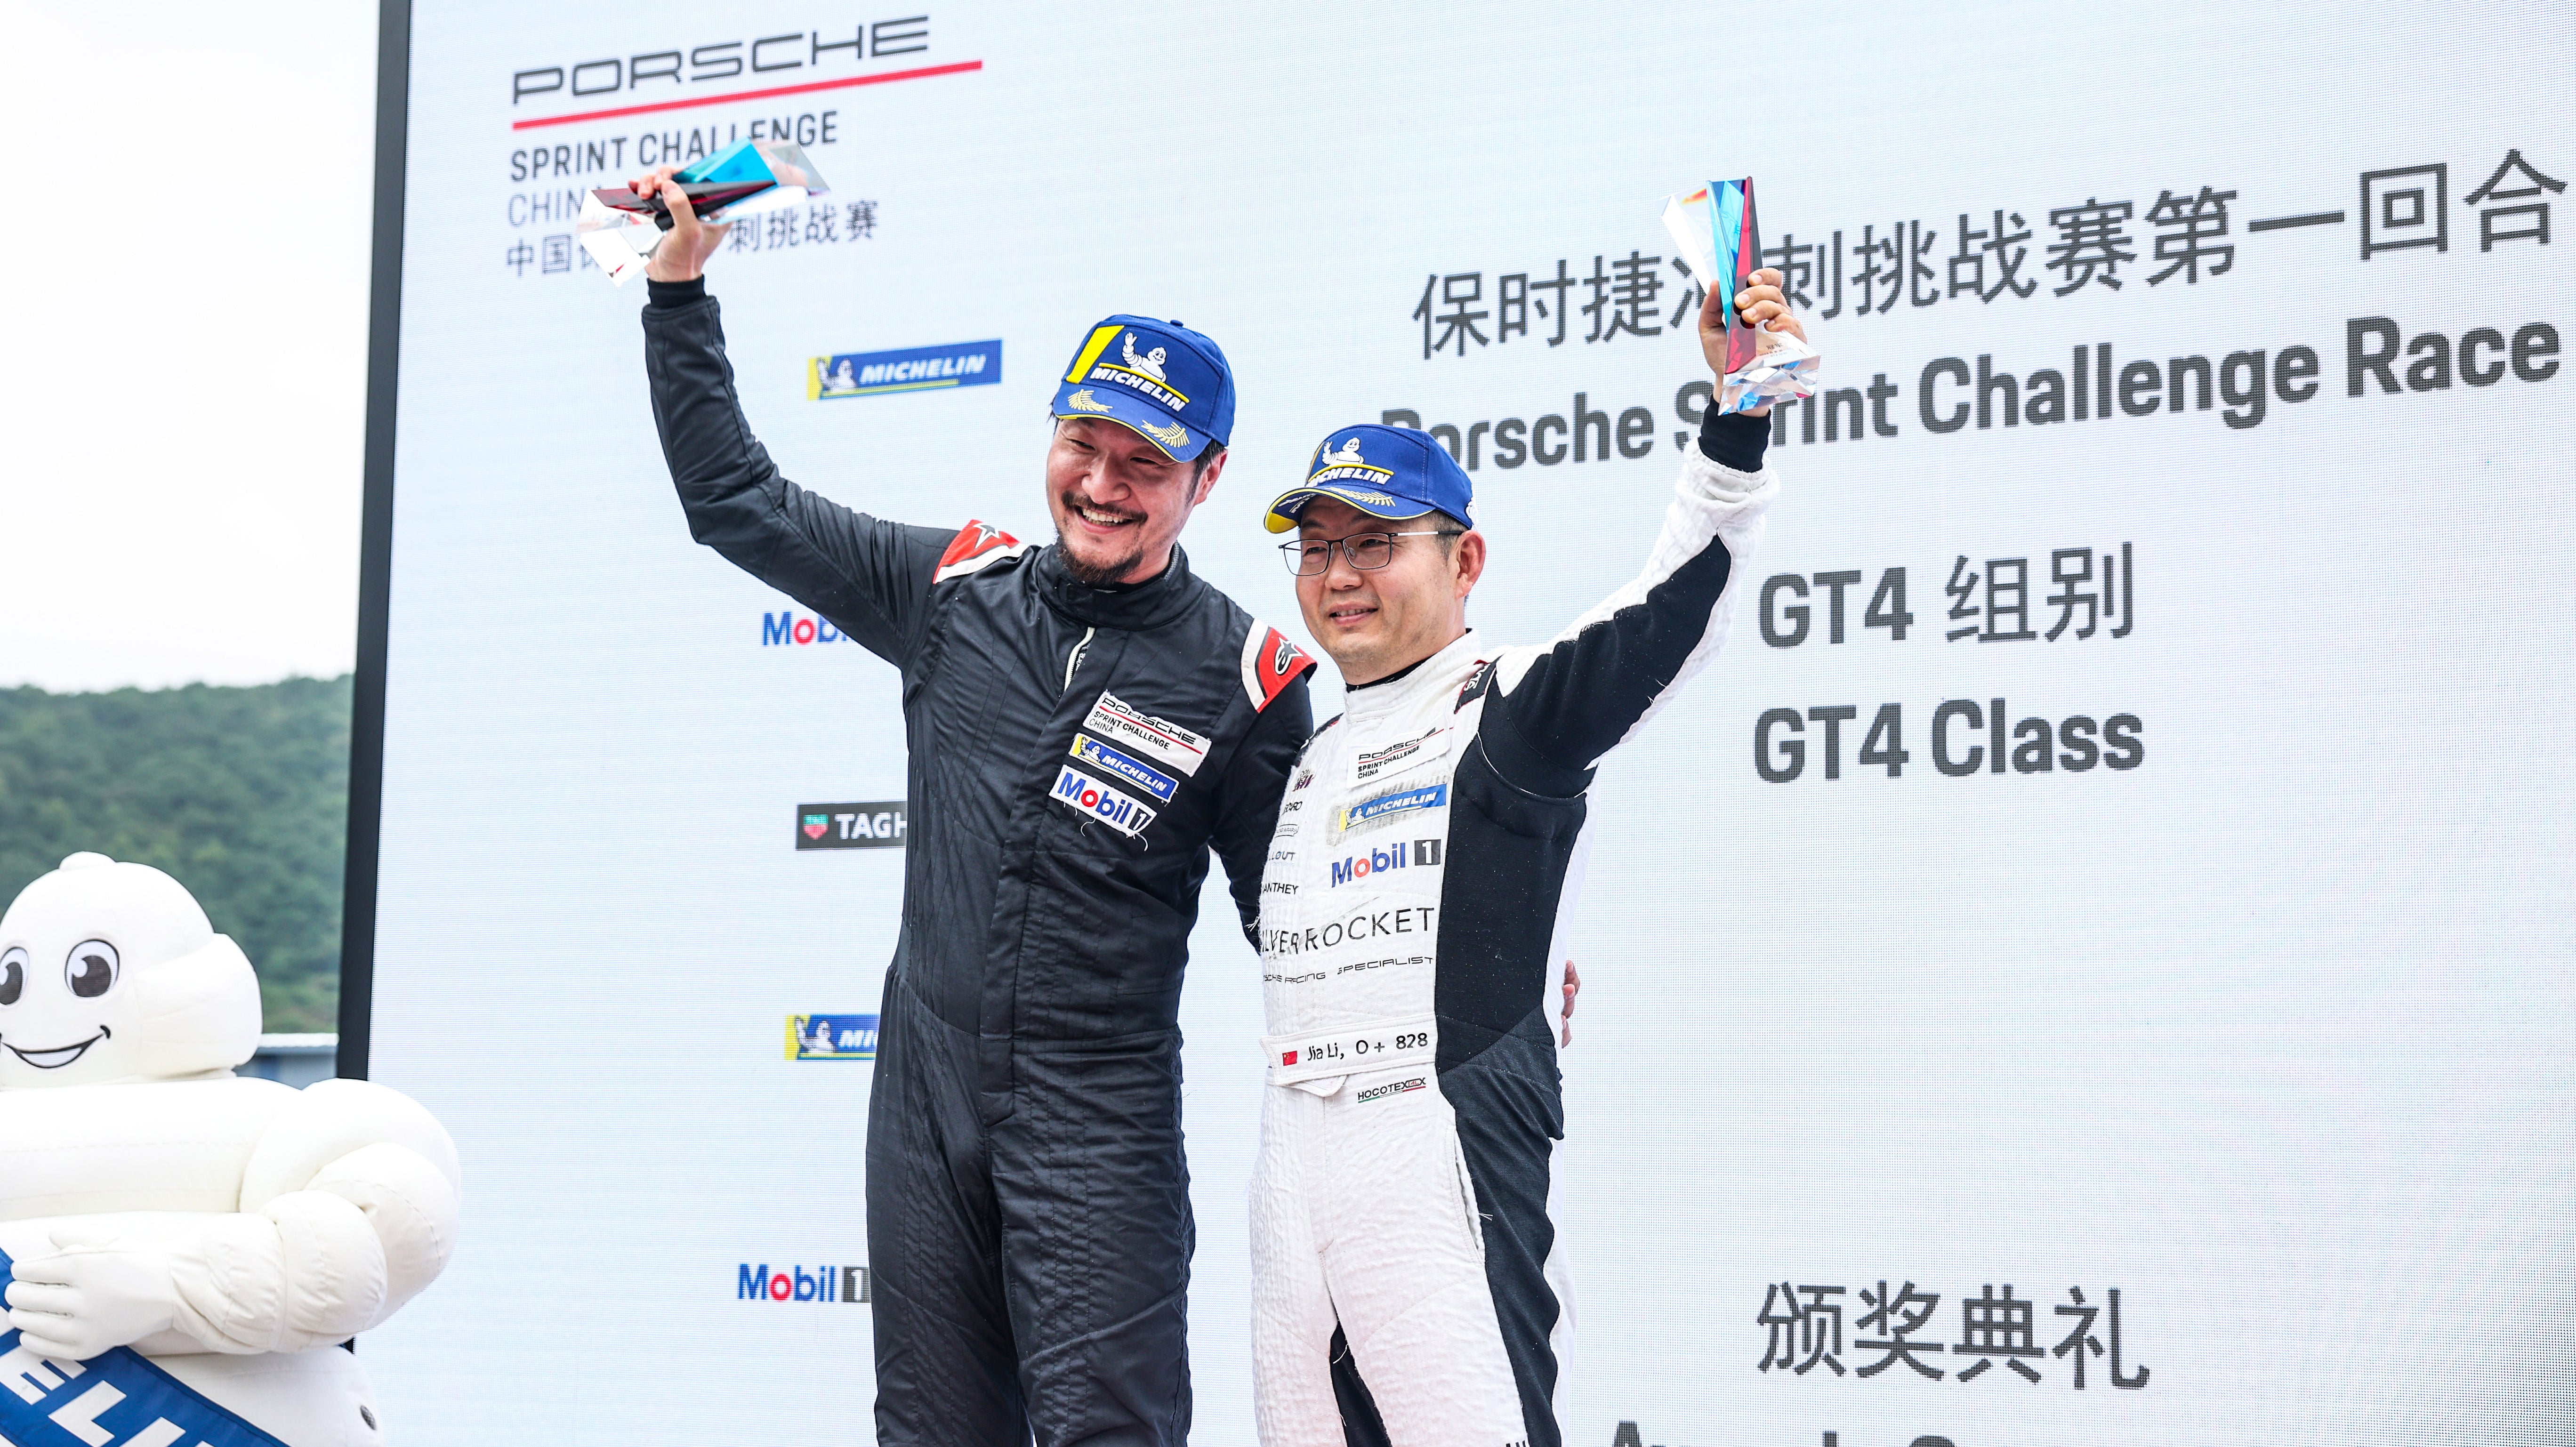 SilverRocket won the 2023 Porsche Sprint Challenge Race - GT4 Class.